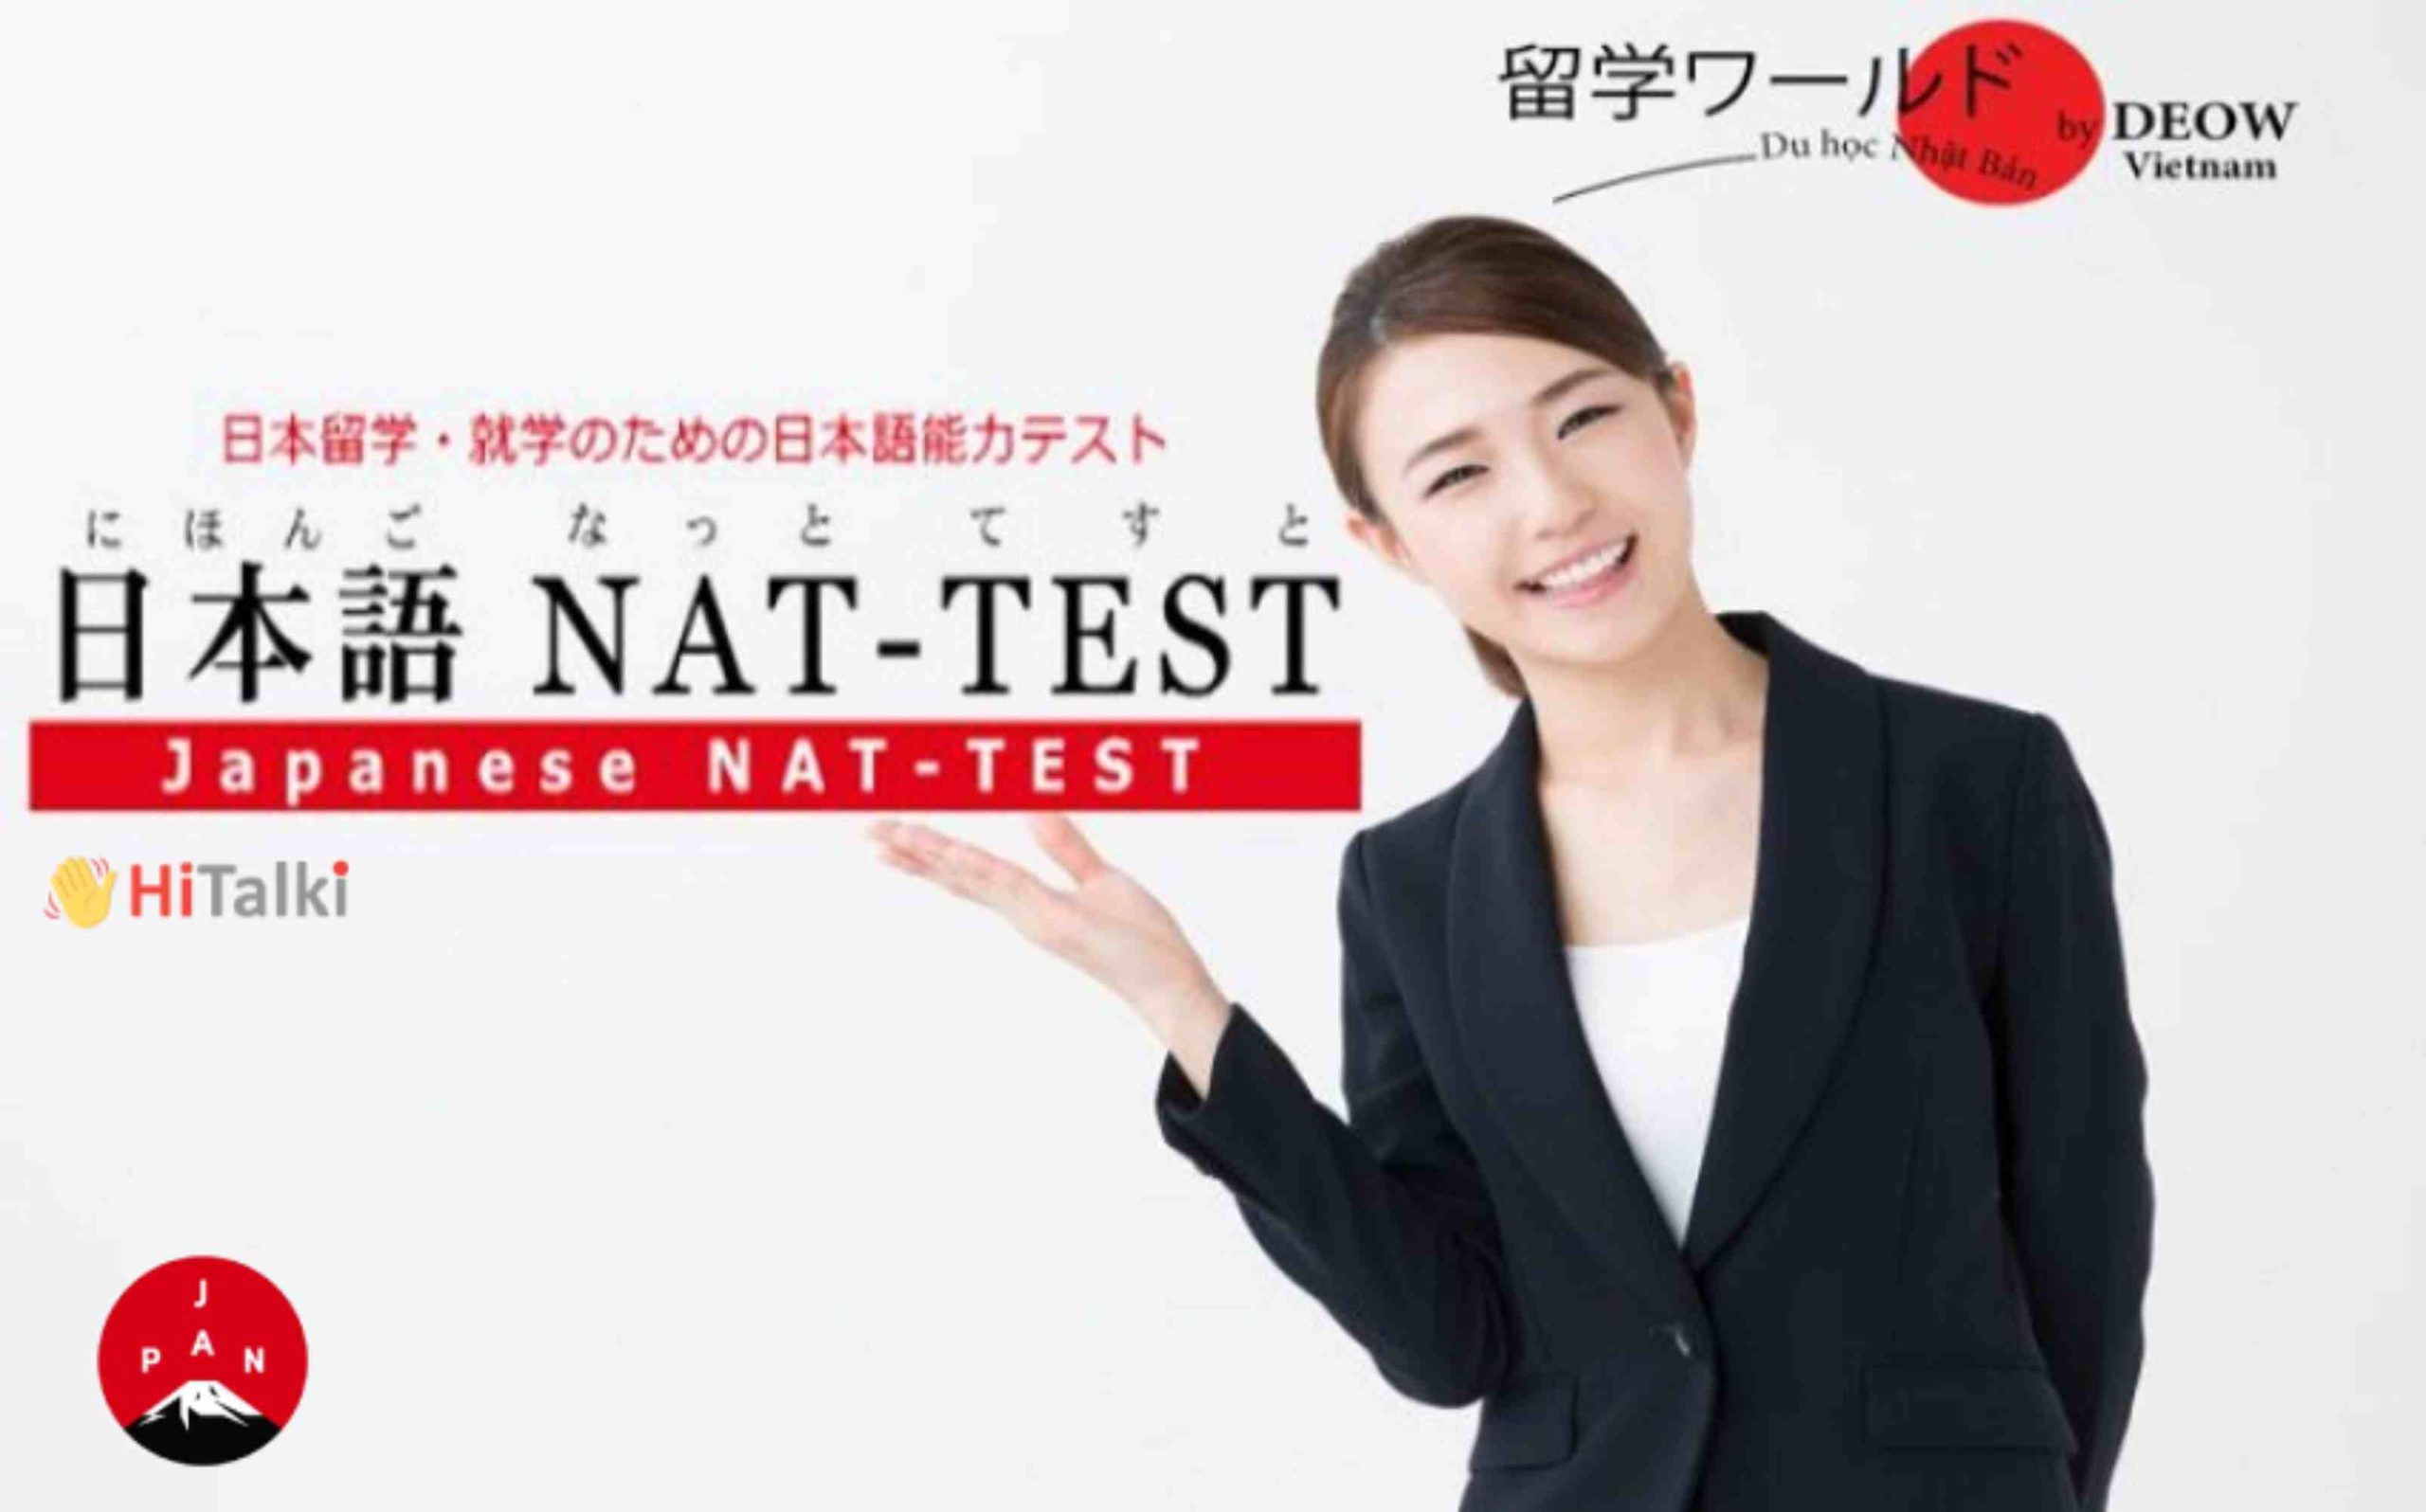 آزمون های مهم زبان ژاپنی